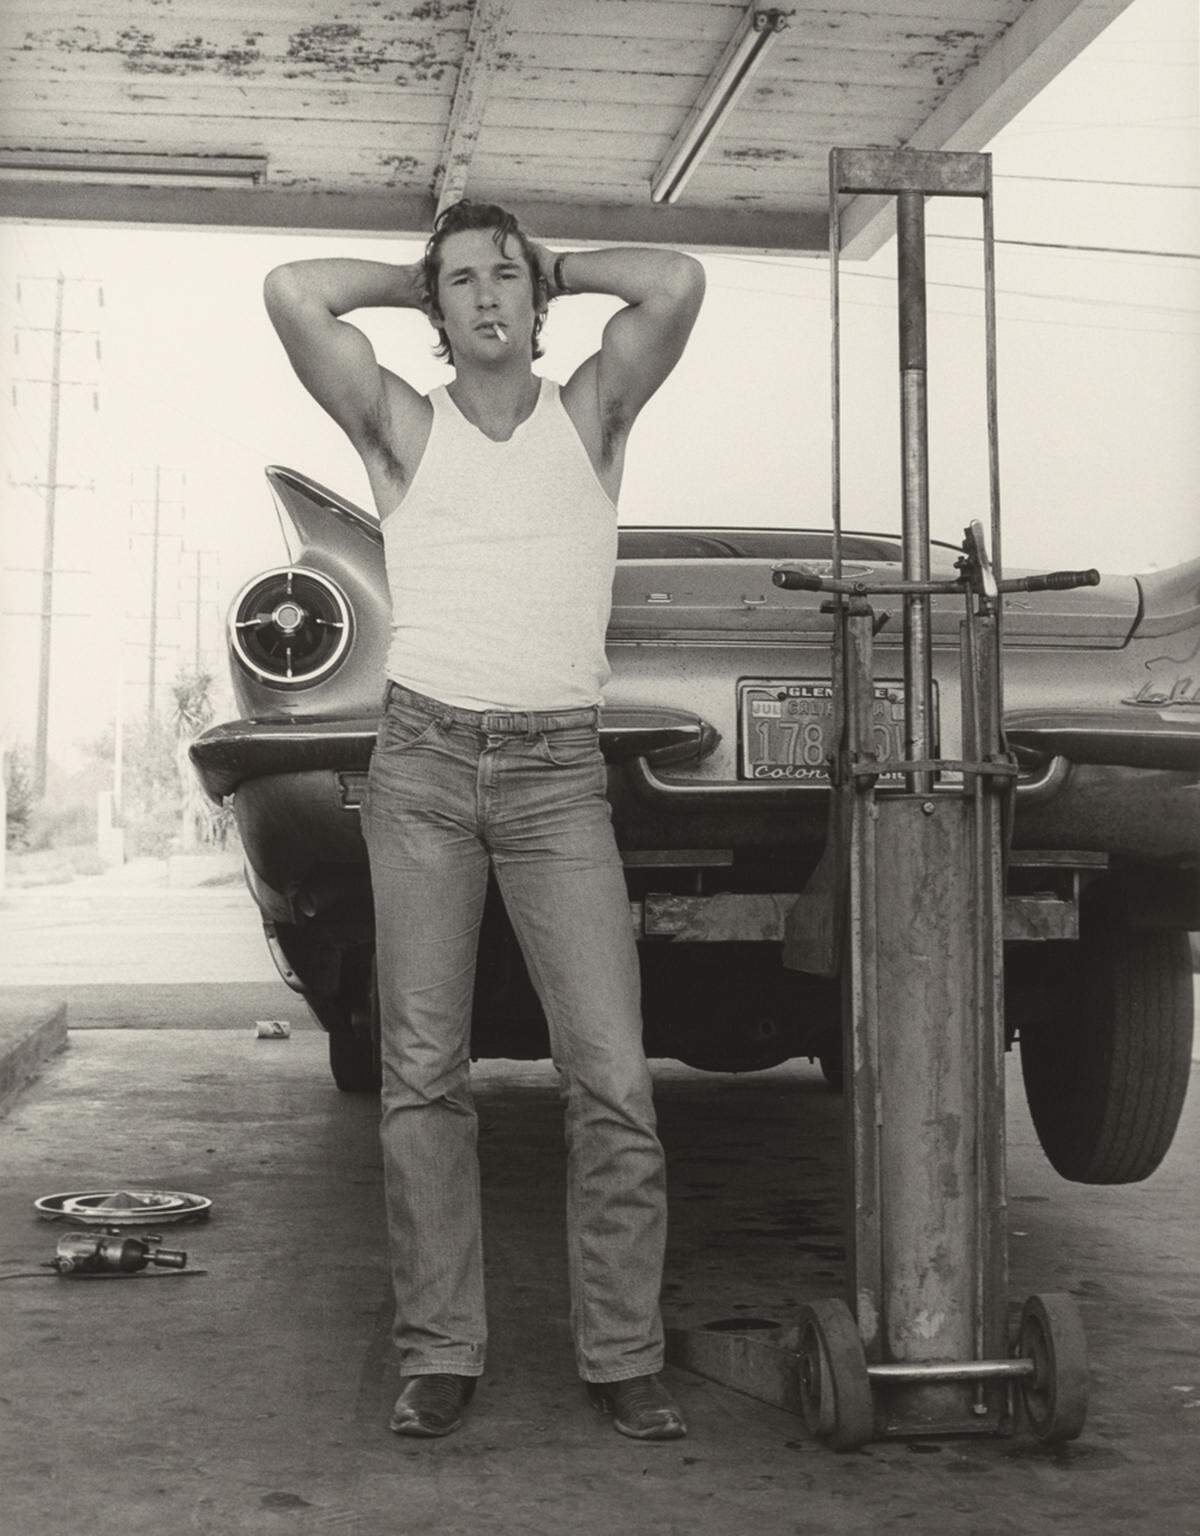 Herb Ritts gelang der große Durchbruch auf dem Gebiet der Photographie 1979 mit der Veröffentlichung einer Aufnahme des jungen Schauspielers Richard Gere, die zwei Jahre zuvor entstanden war. Richard Gere, San Bernardino, 1977.